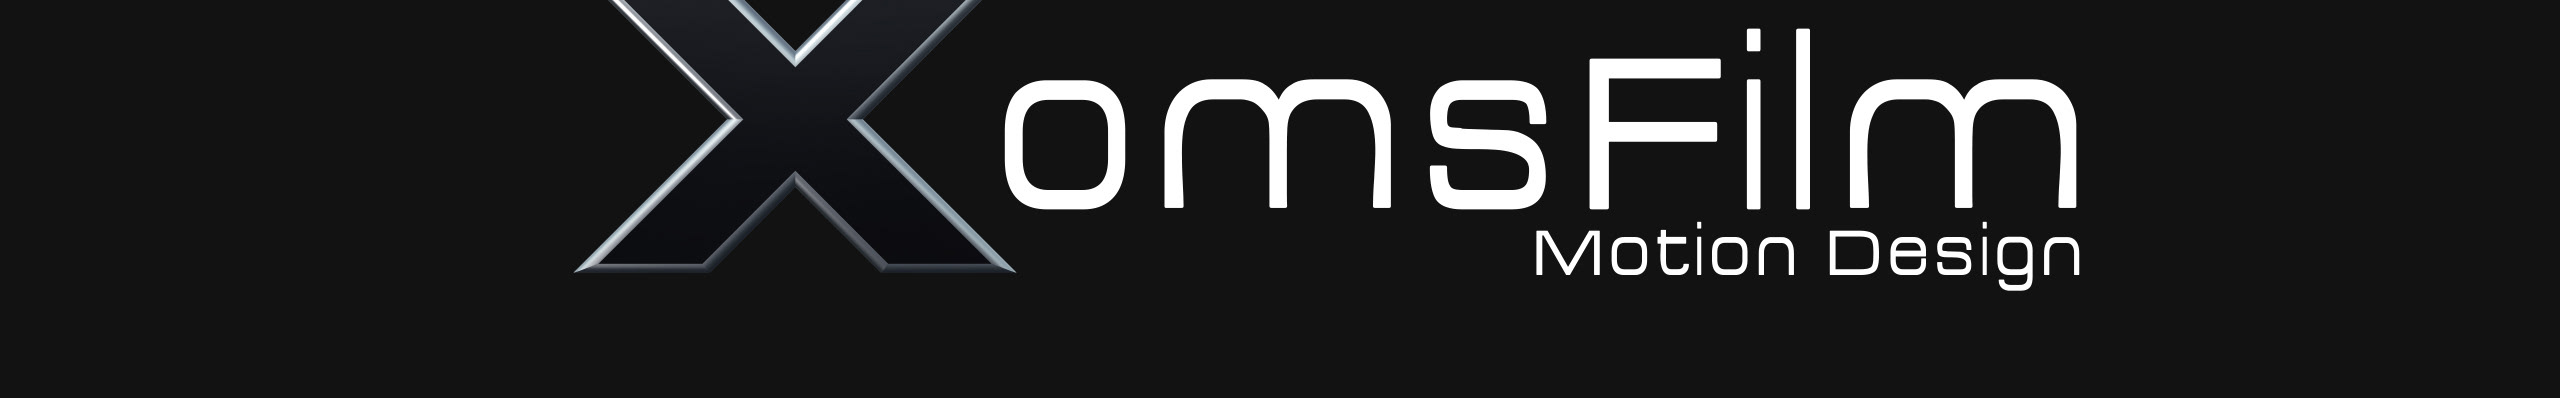 Banner de perfil de XomsFilm TV